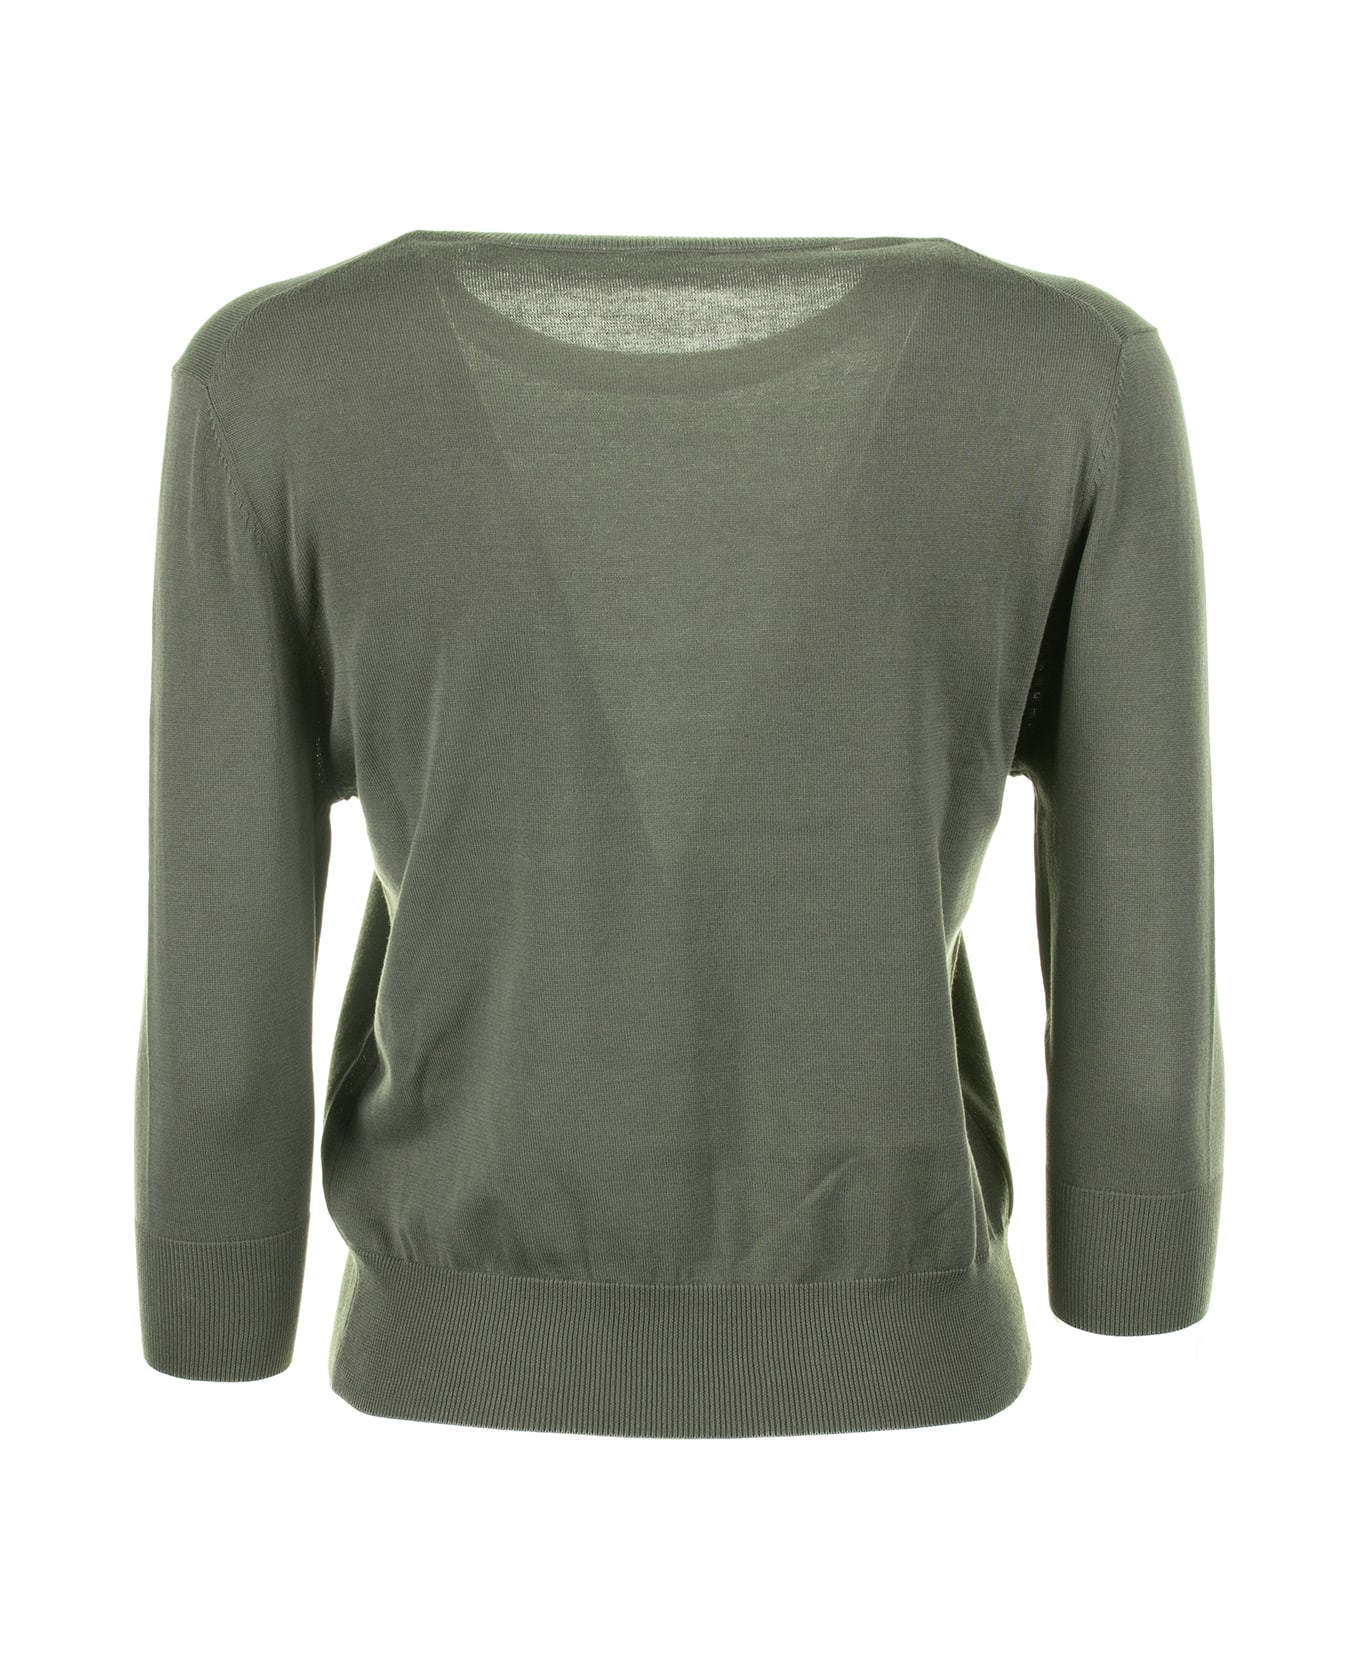 Aspesi Green Shirt With 3/4 Sleeves - VERDE ニットウェア